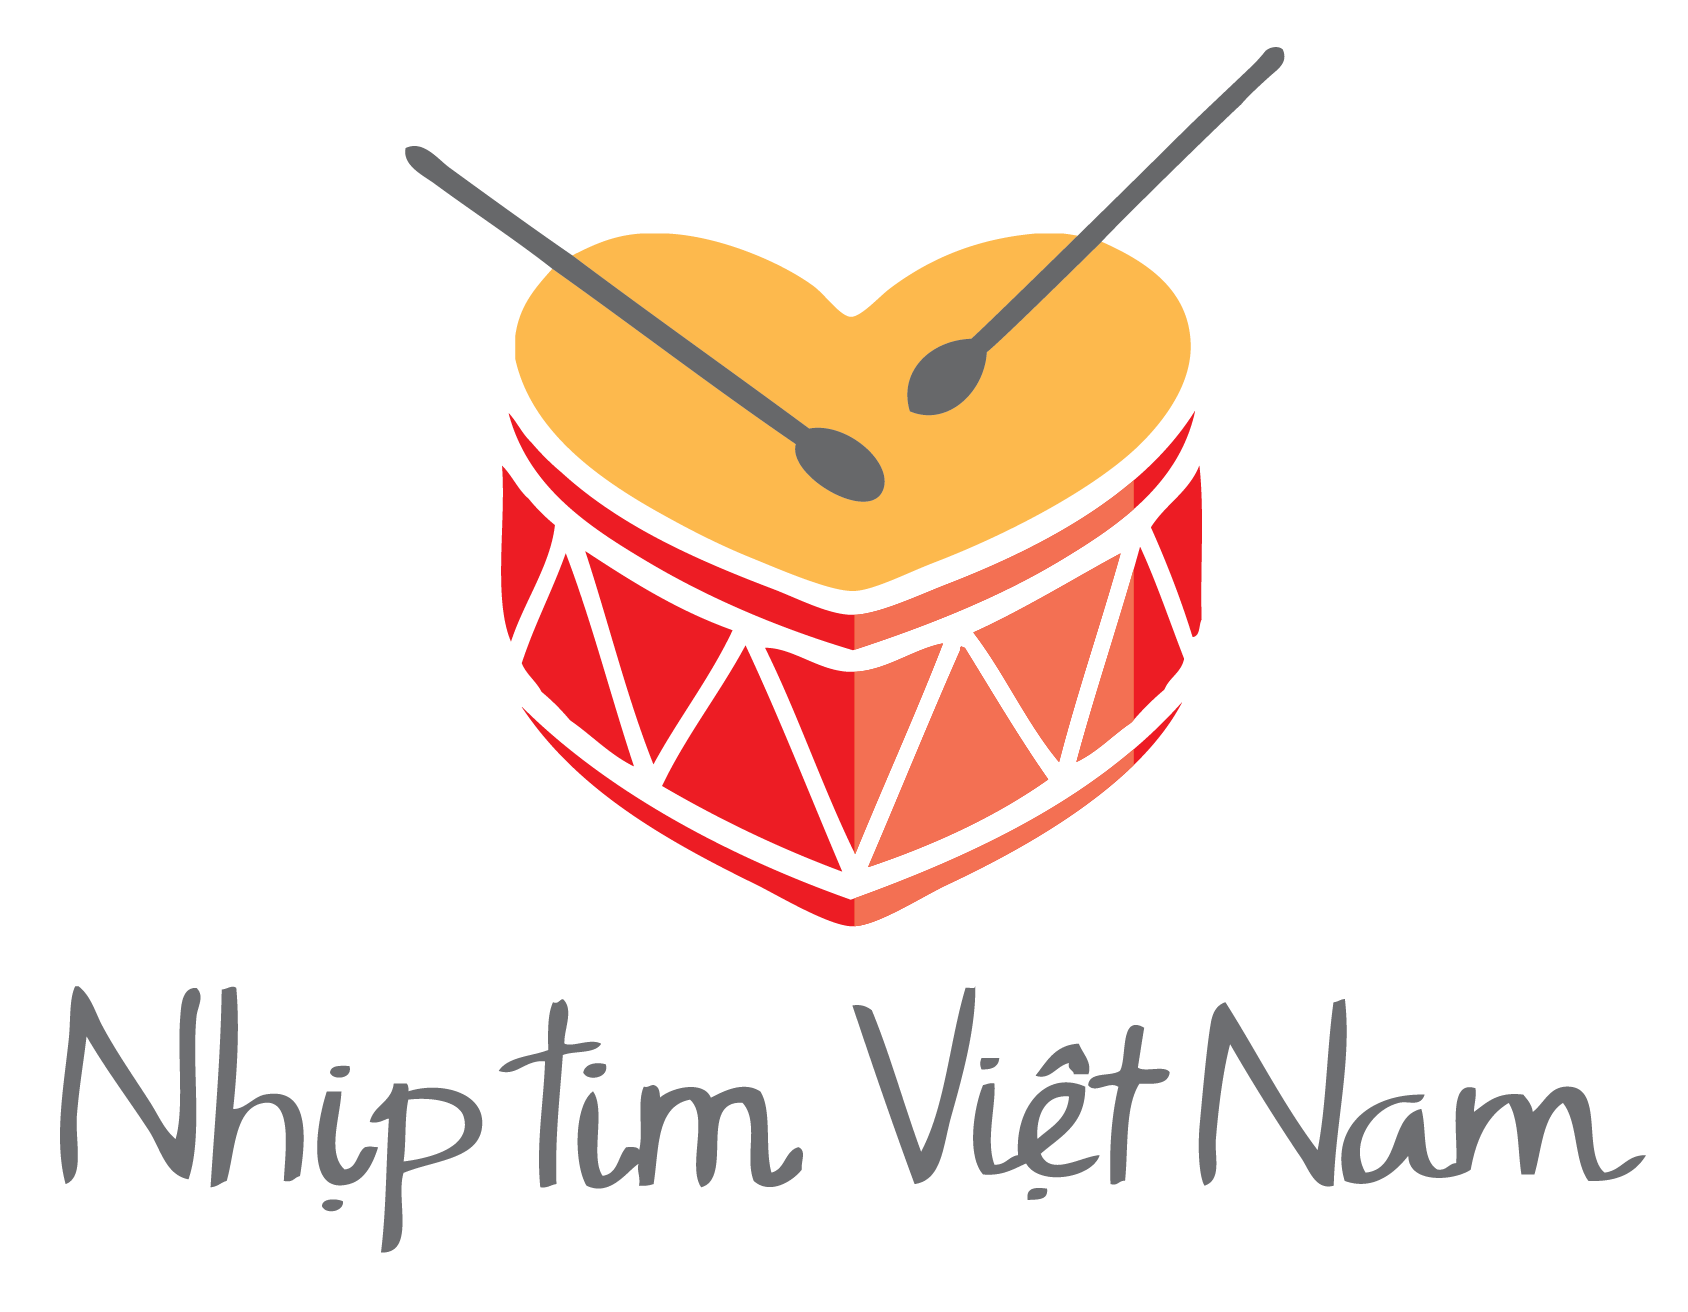 DNXH Vietnam Children’s Fund (VCF SE)